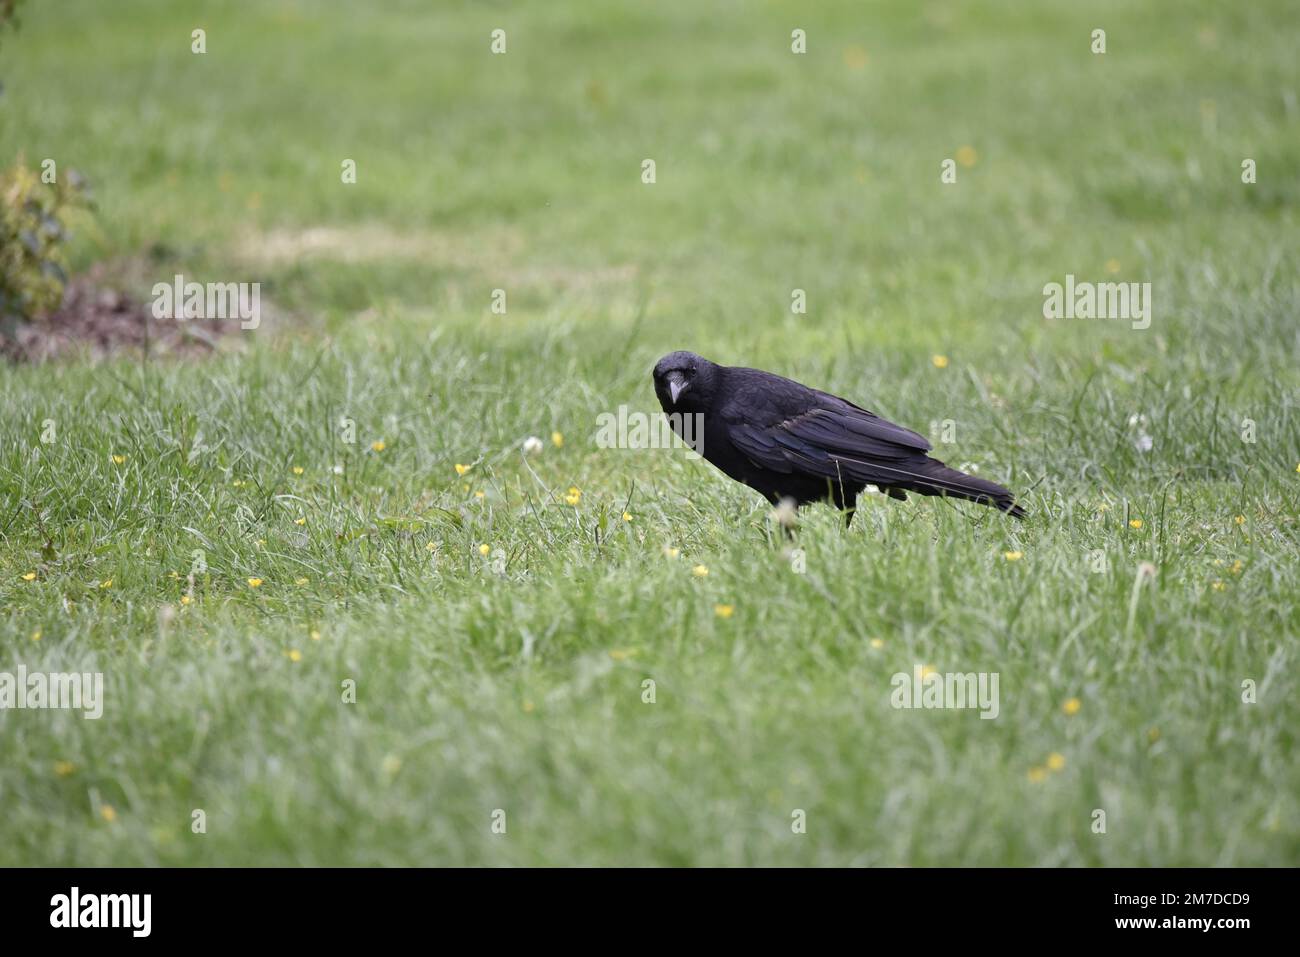 Carrion Crow (Corvus corone) in piedi a sinistra-profilo su erba corta verde e butercups gialli a destra dell'immagine, testa si è rivolto alla macchina fotografica nel luglio, Regno Unito Foto Stock